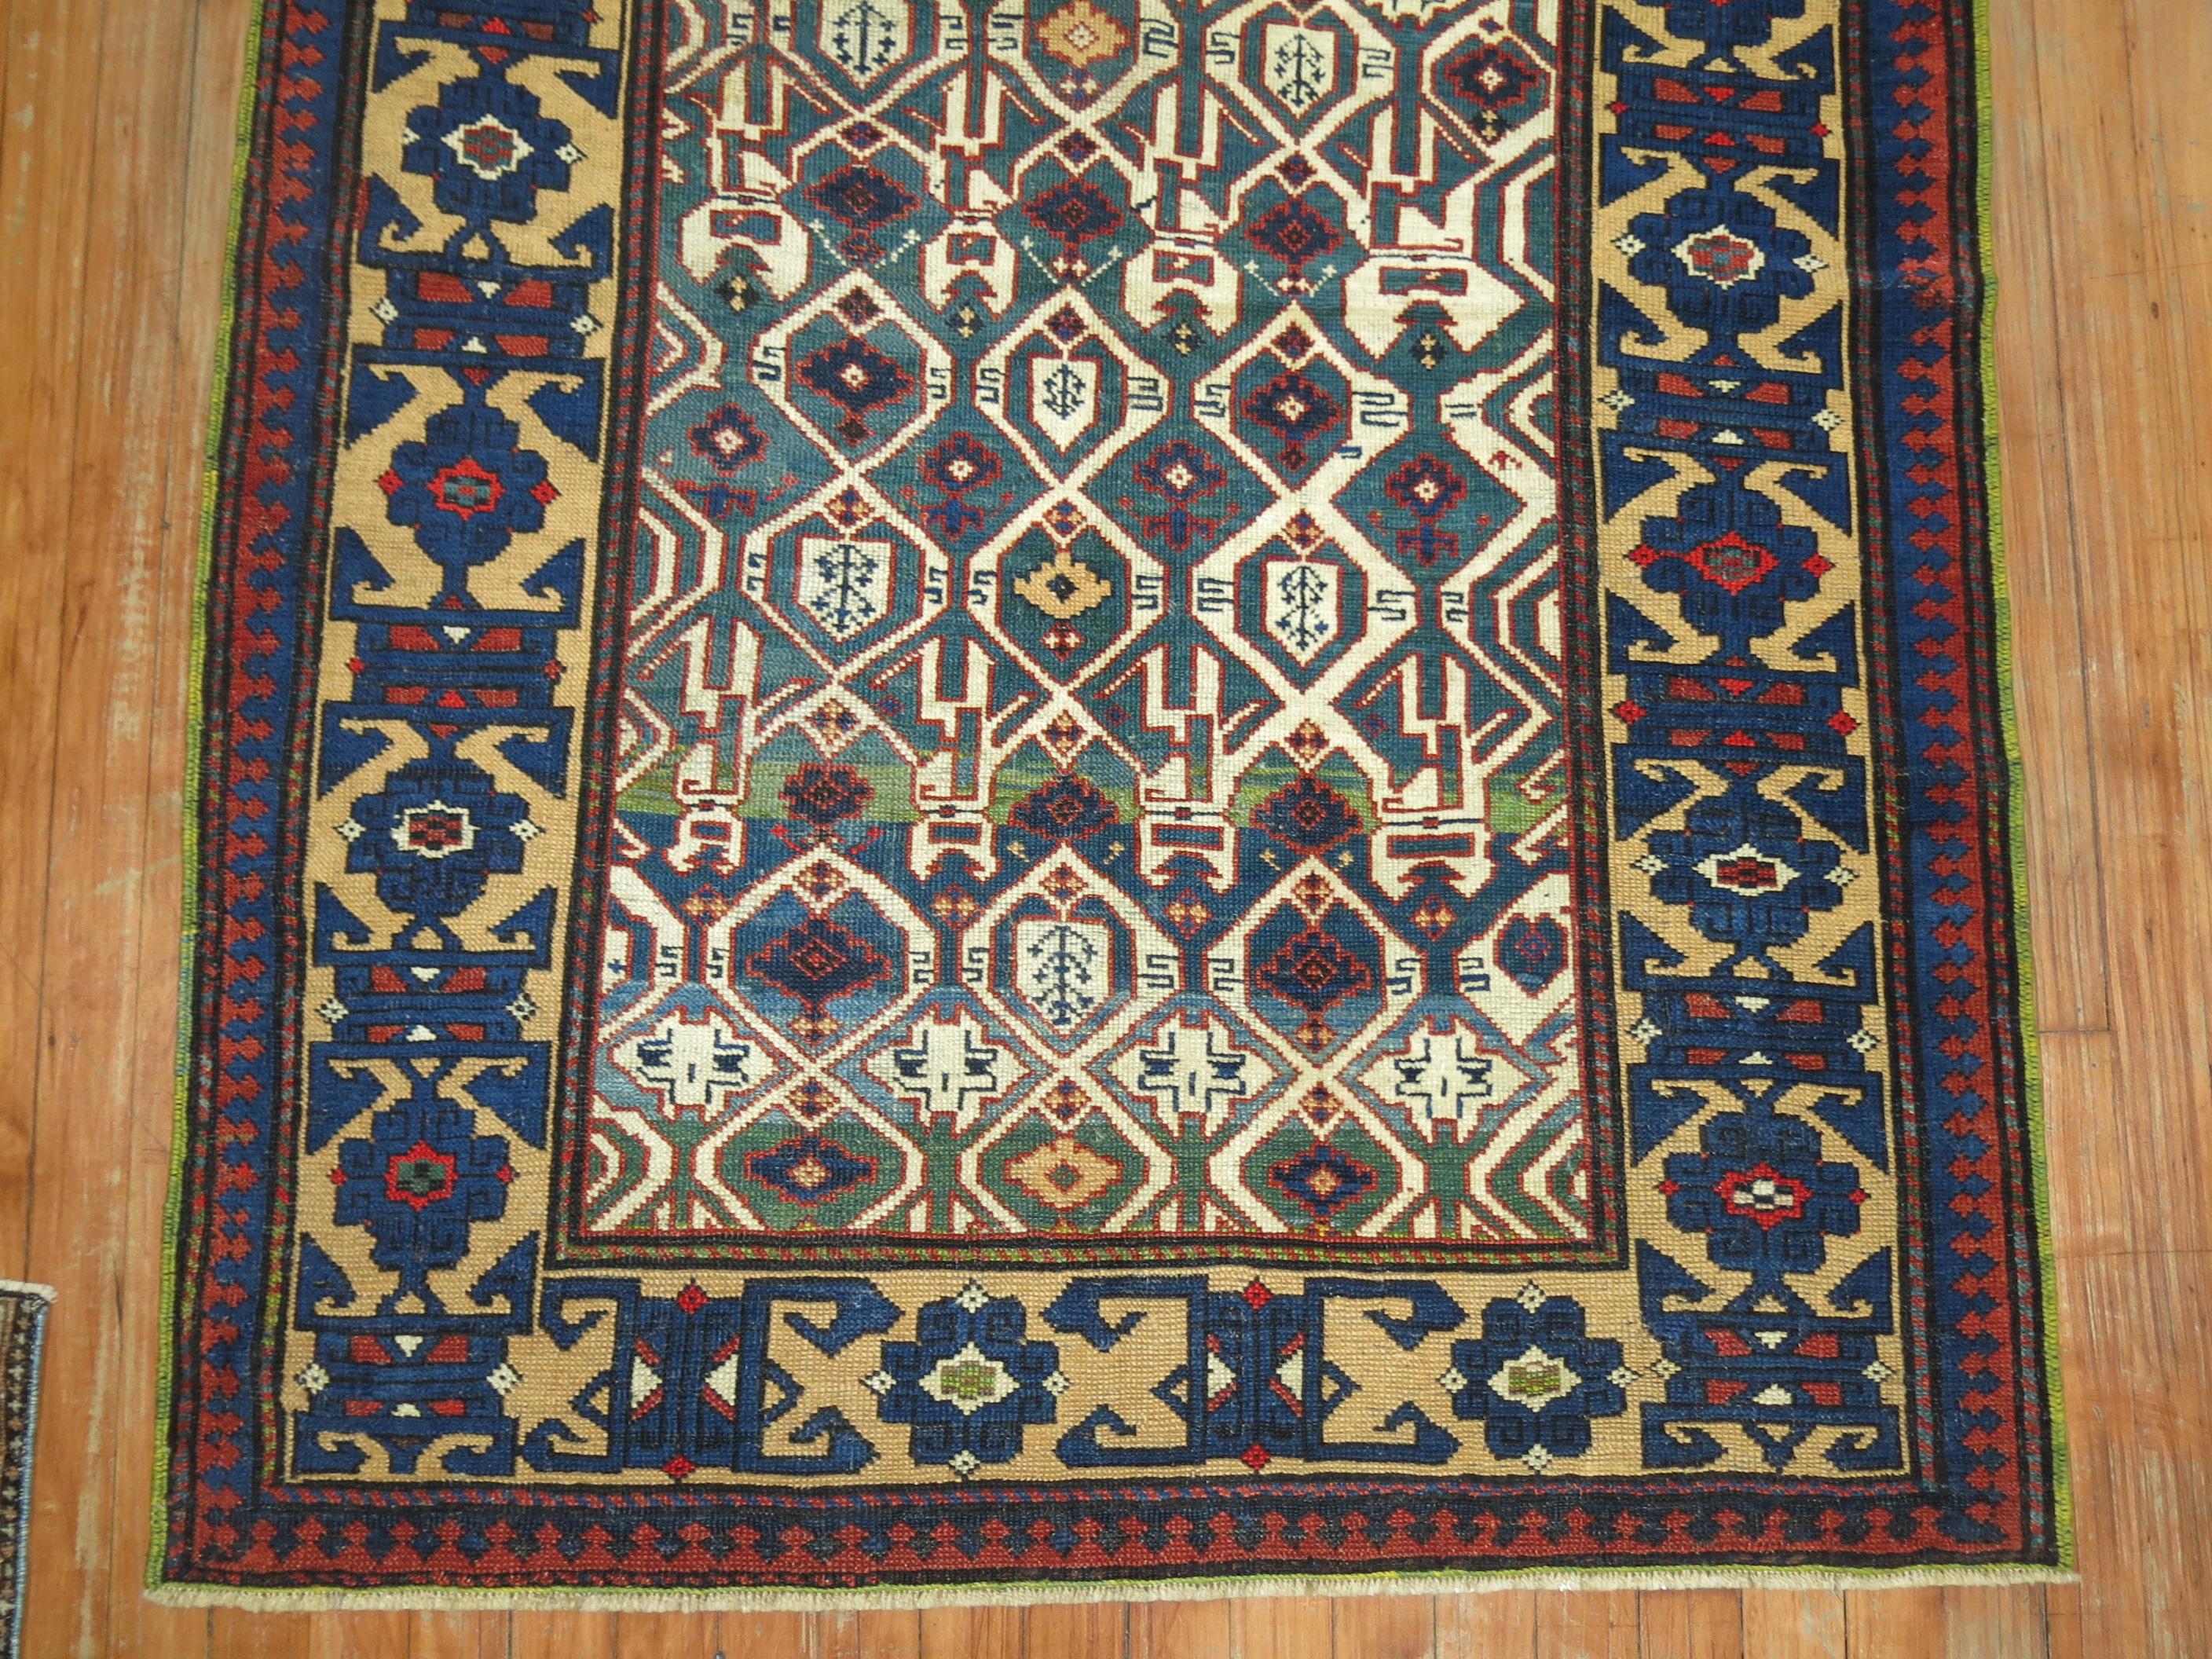 Ein kaukasischer Kuba-Teppich aus dem frühen 20. Jahrhundert mit einem geometrischen Muster in Grün und Blau

Maße: 3'7